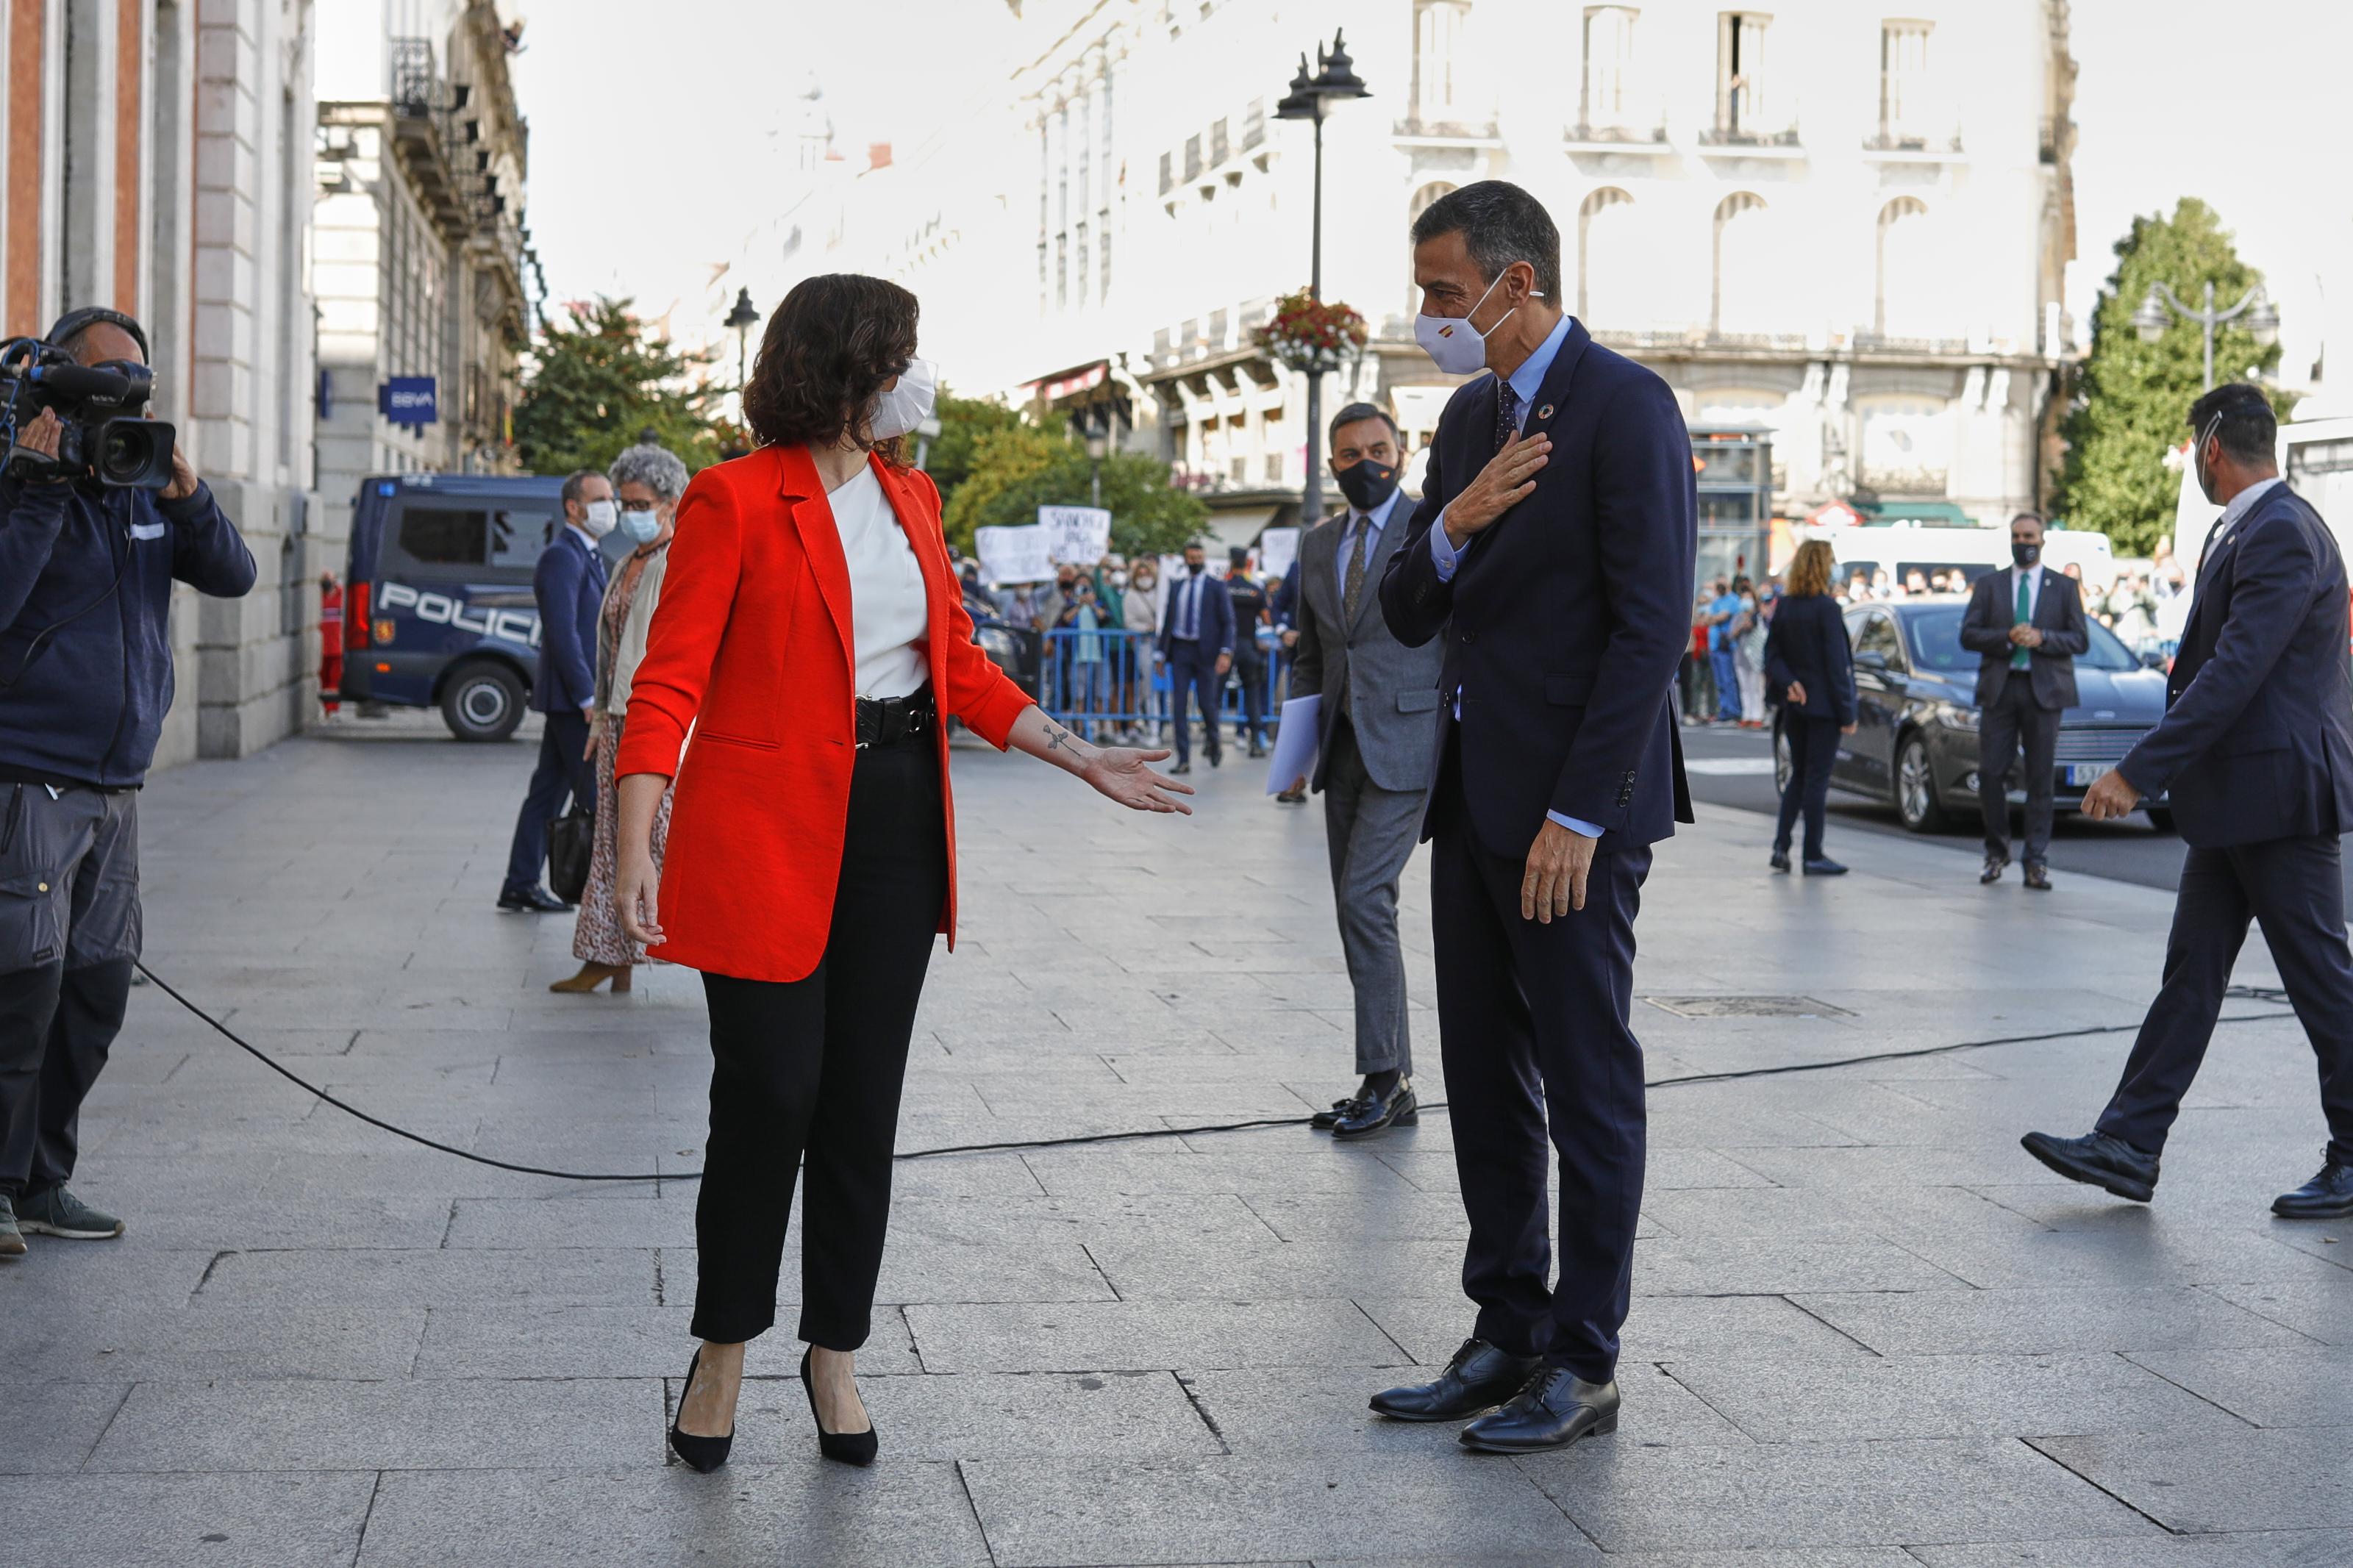  La presidenta de la Comunidad de Madrid, Isabel Díaz Ayuso, y el jefe del Ejecutivo, Pedro Sánchez, se saludan antes de su reunión en la sede de la Presidencia regional, en Madrid 